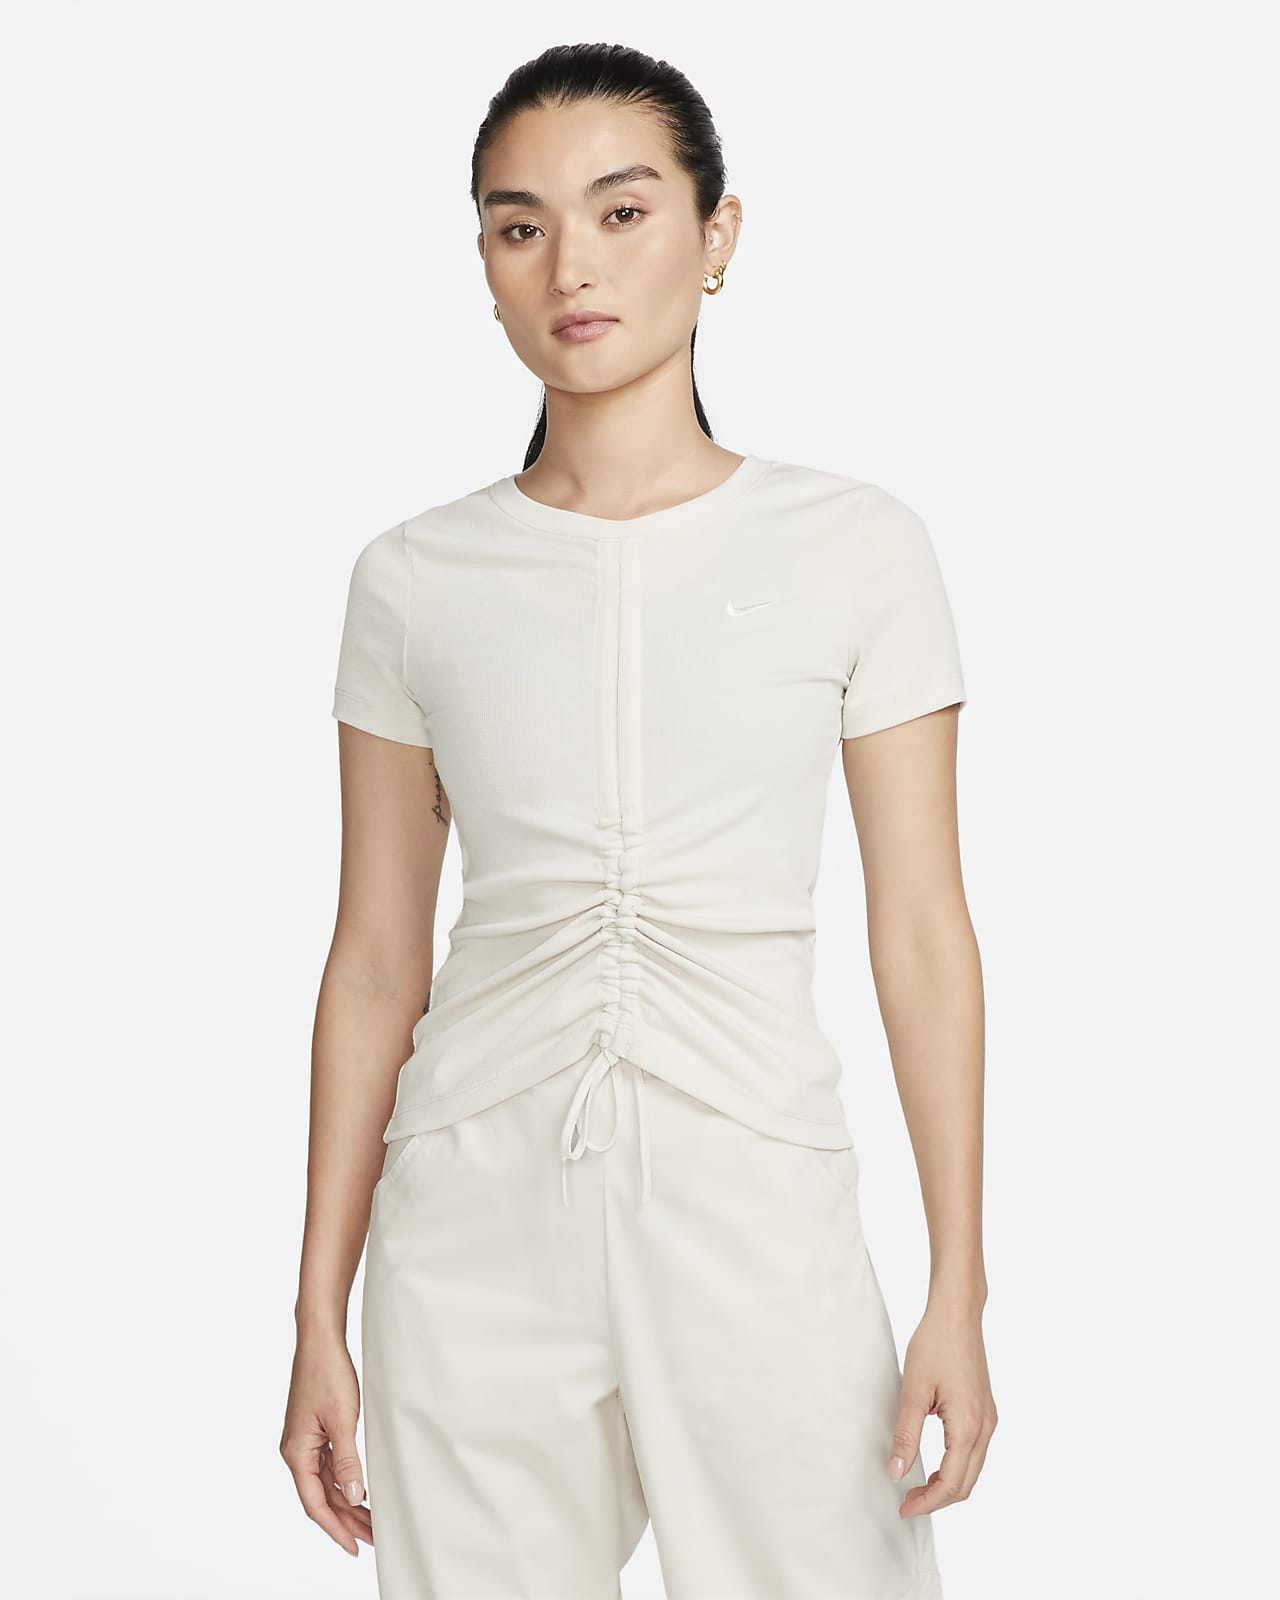 Γυναικεία κοντομάνικη μπλούζα με μέτριο μήκος crop σε ύφανση ριμπ Nike Sportswear Essentials